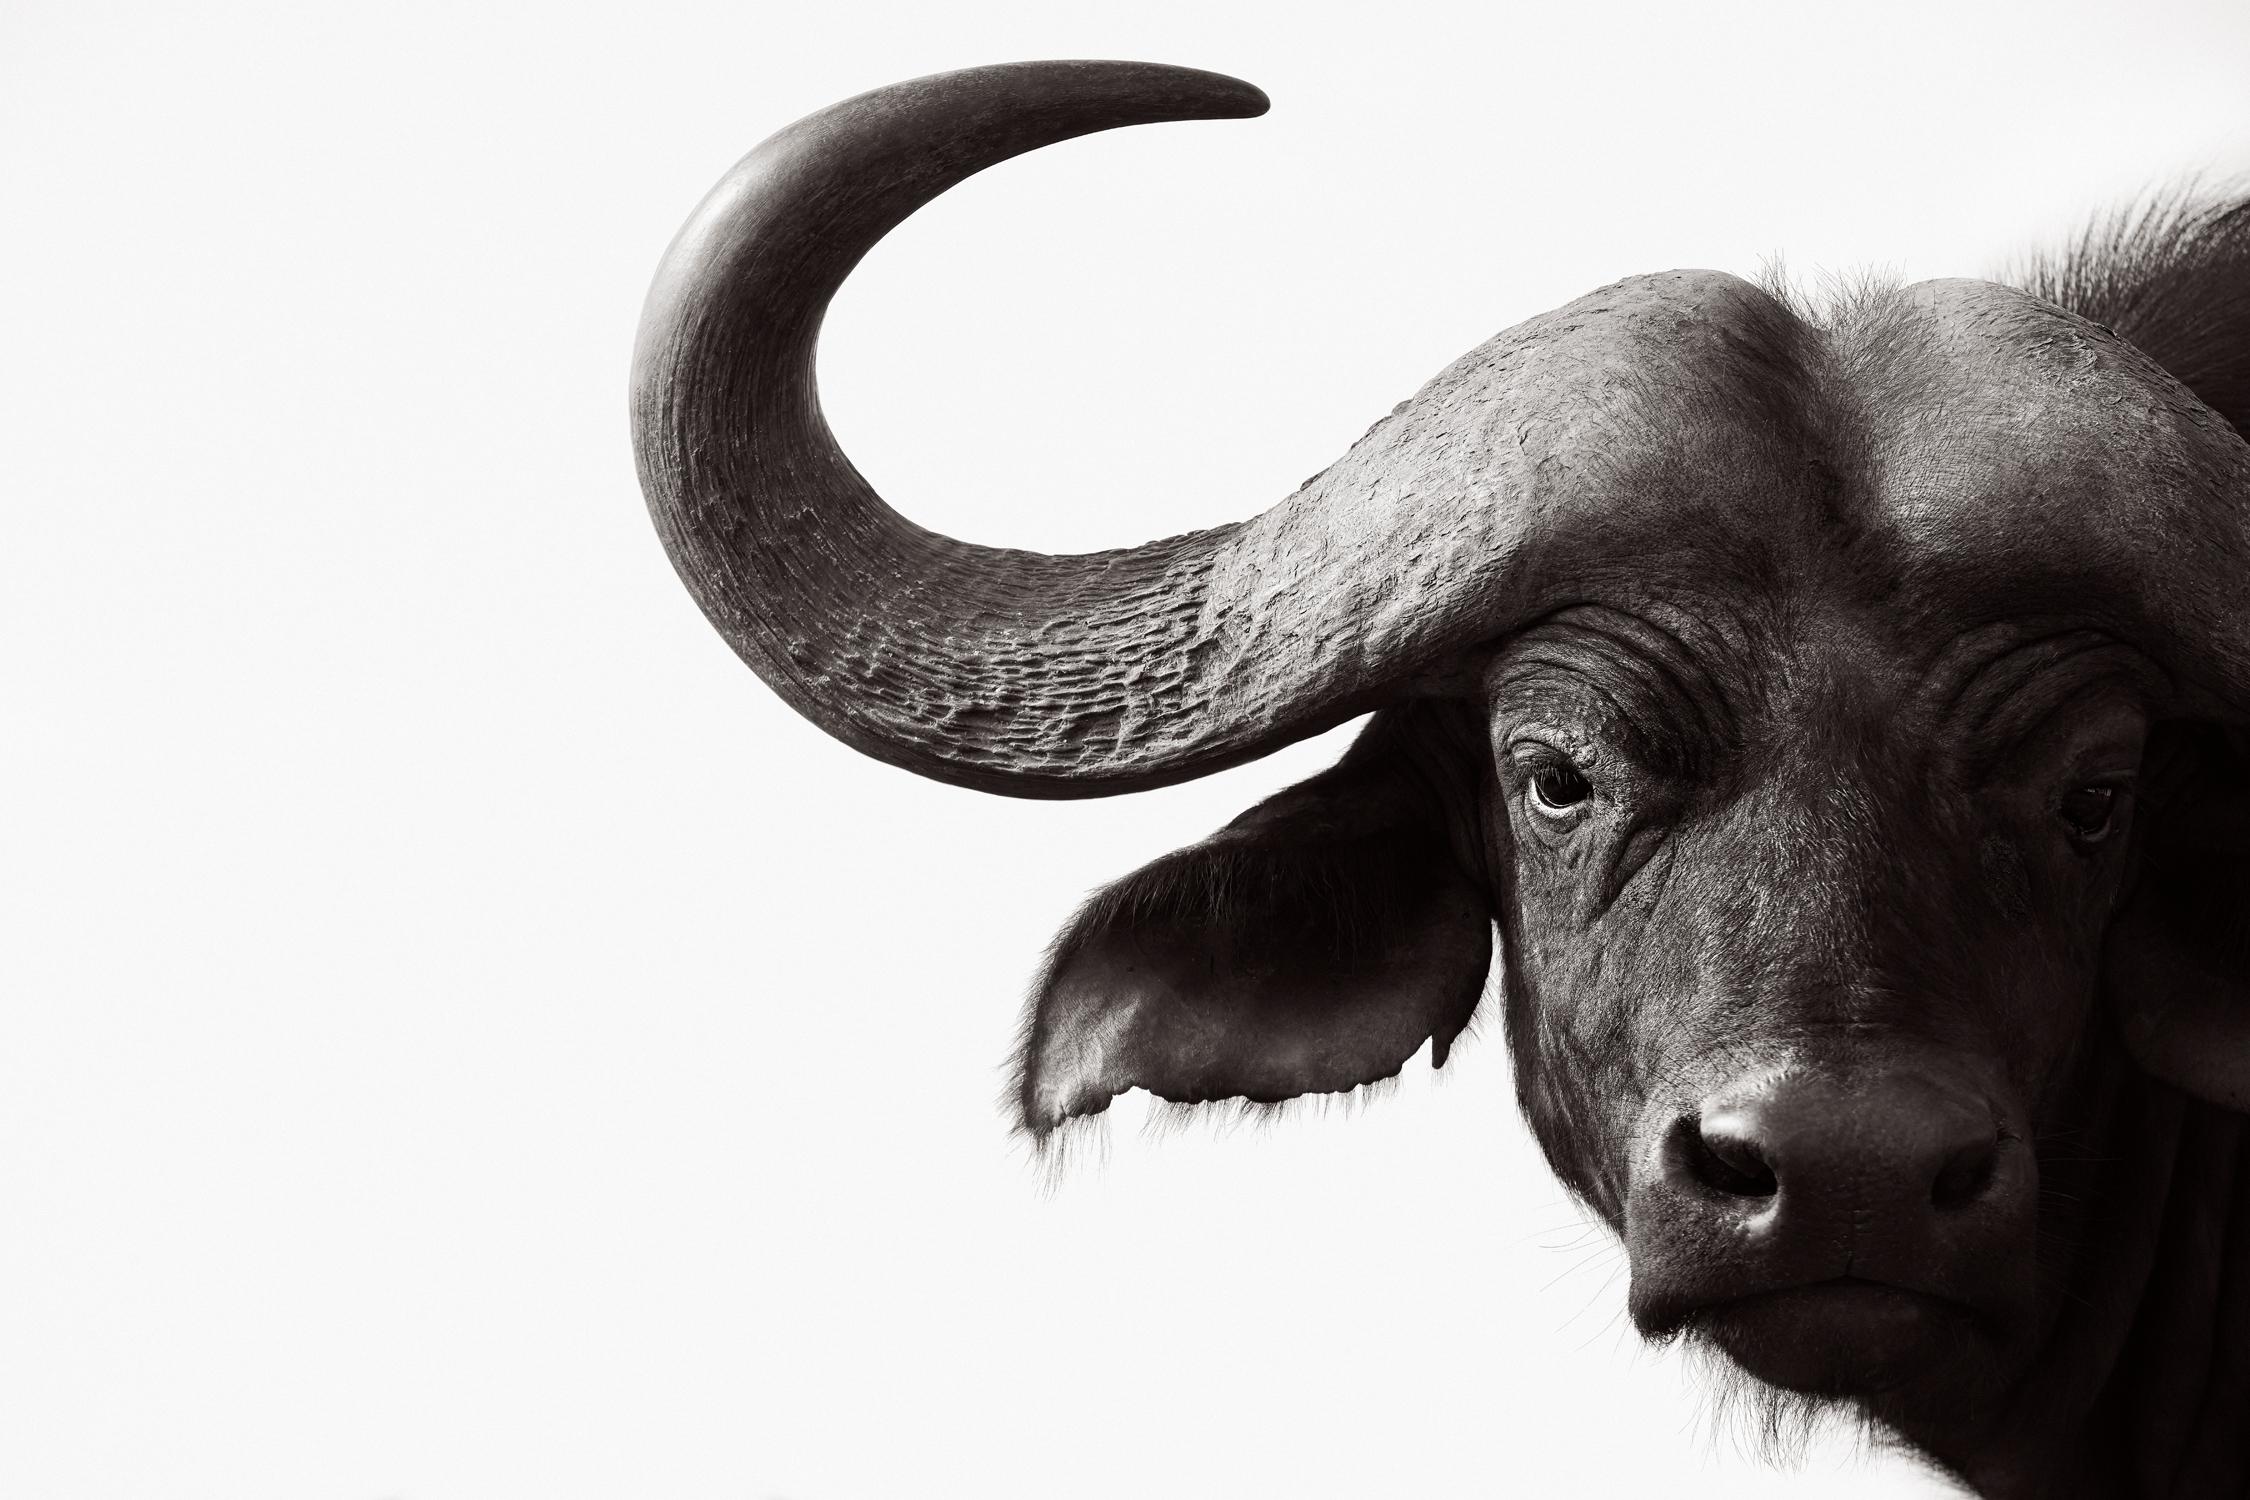 Drew Doggett Black and White Photograph – Porträt eines Wasserbüffels vor einem weißen Hintergrund, von der Mode inspiriert